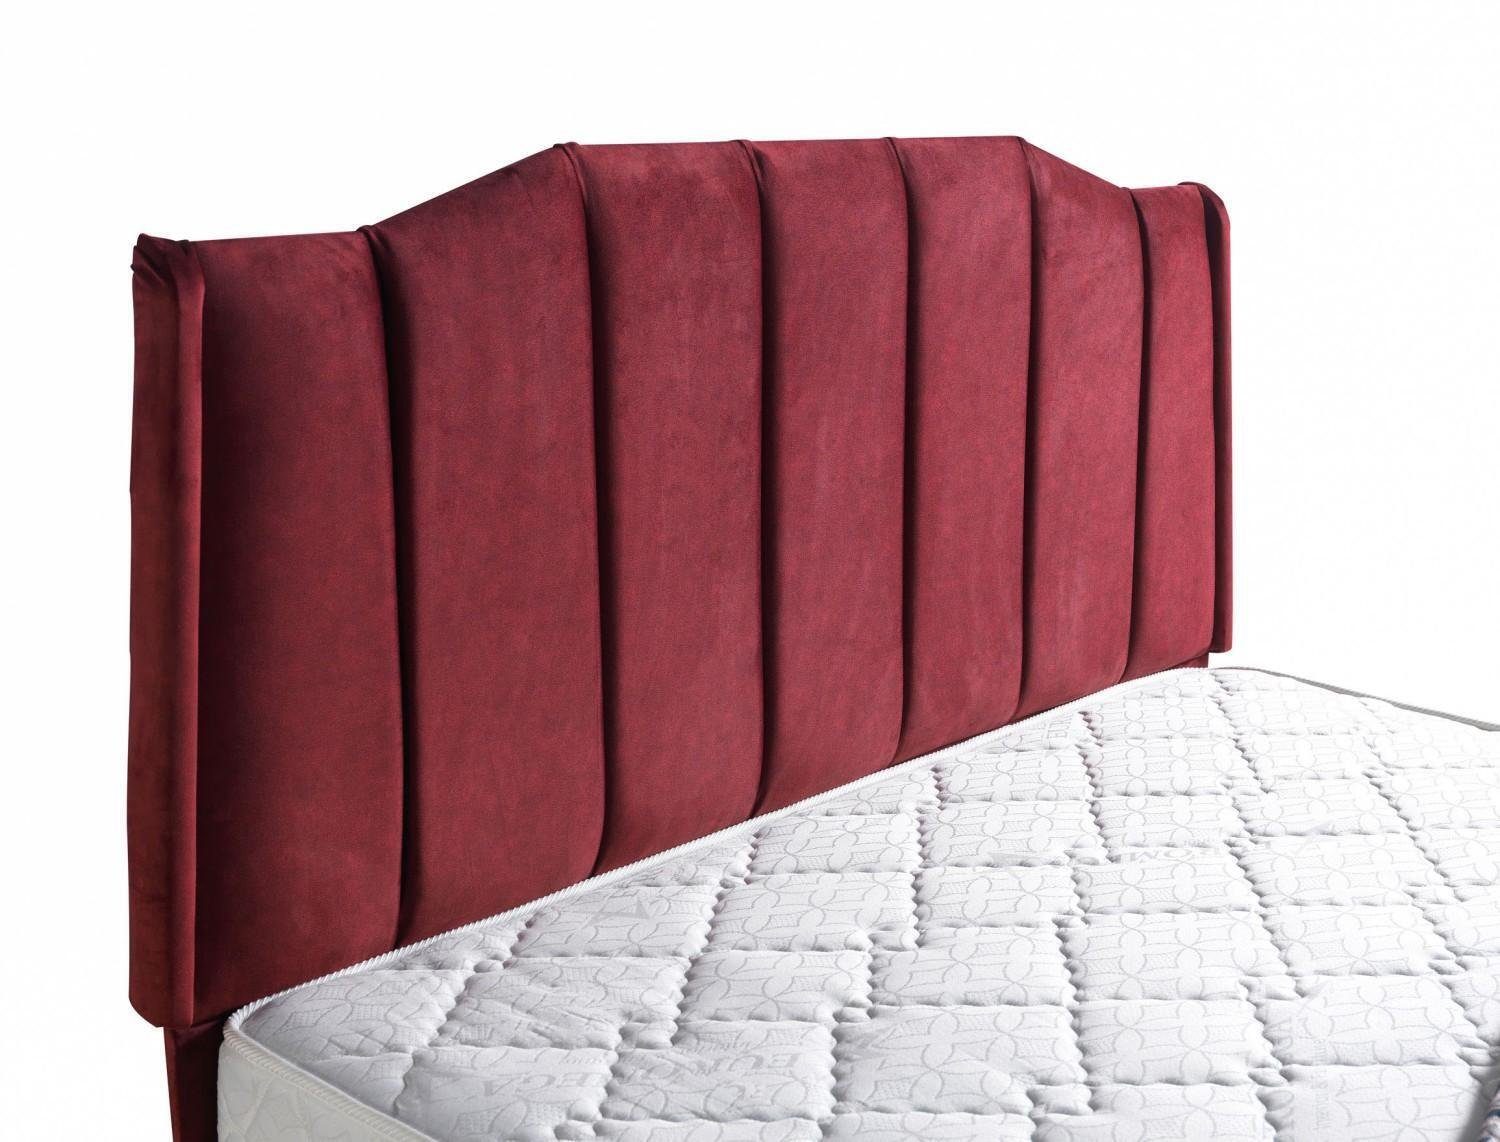 Betten JVmoebel (Bett), In Betten Polster Modern Neu Schlafzimmer Bett Bett Made Luxus Möbel Design Europe